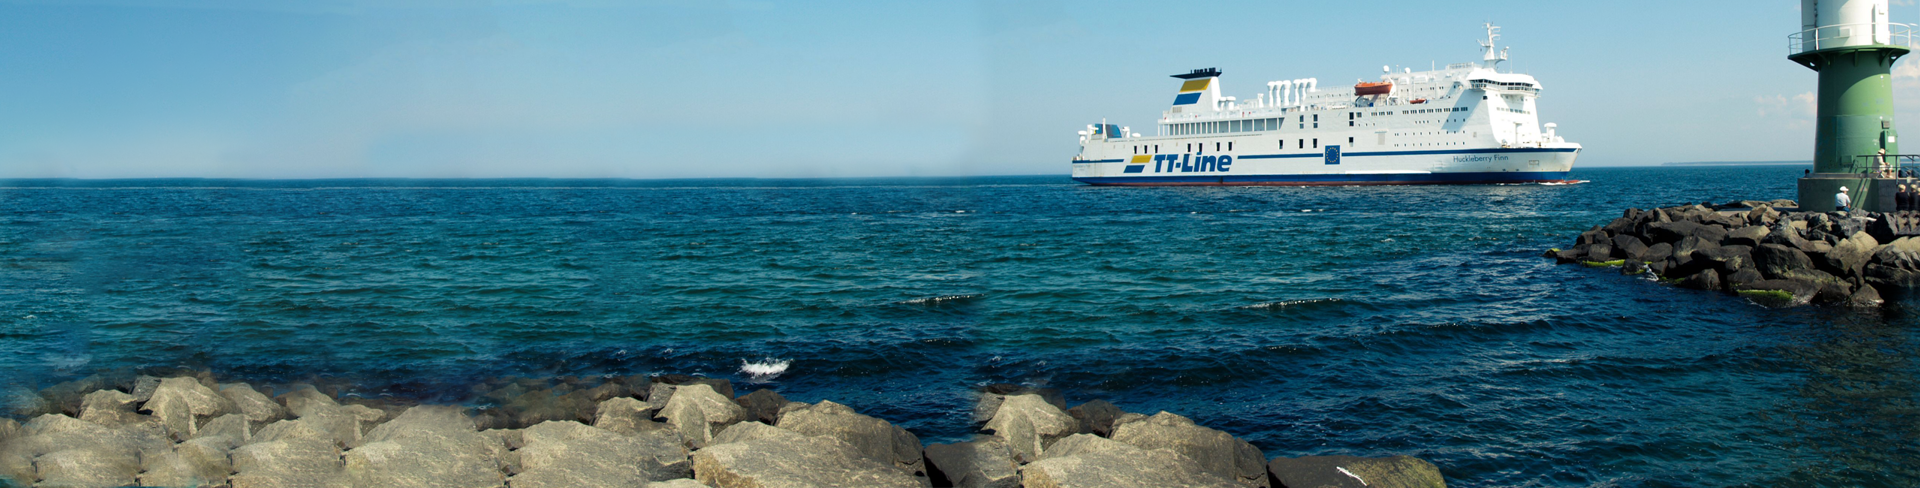 Port-Rostock-TT-Line-ferry-Huckleberry-Finn-at-sea-vuurtoren